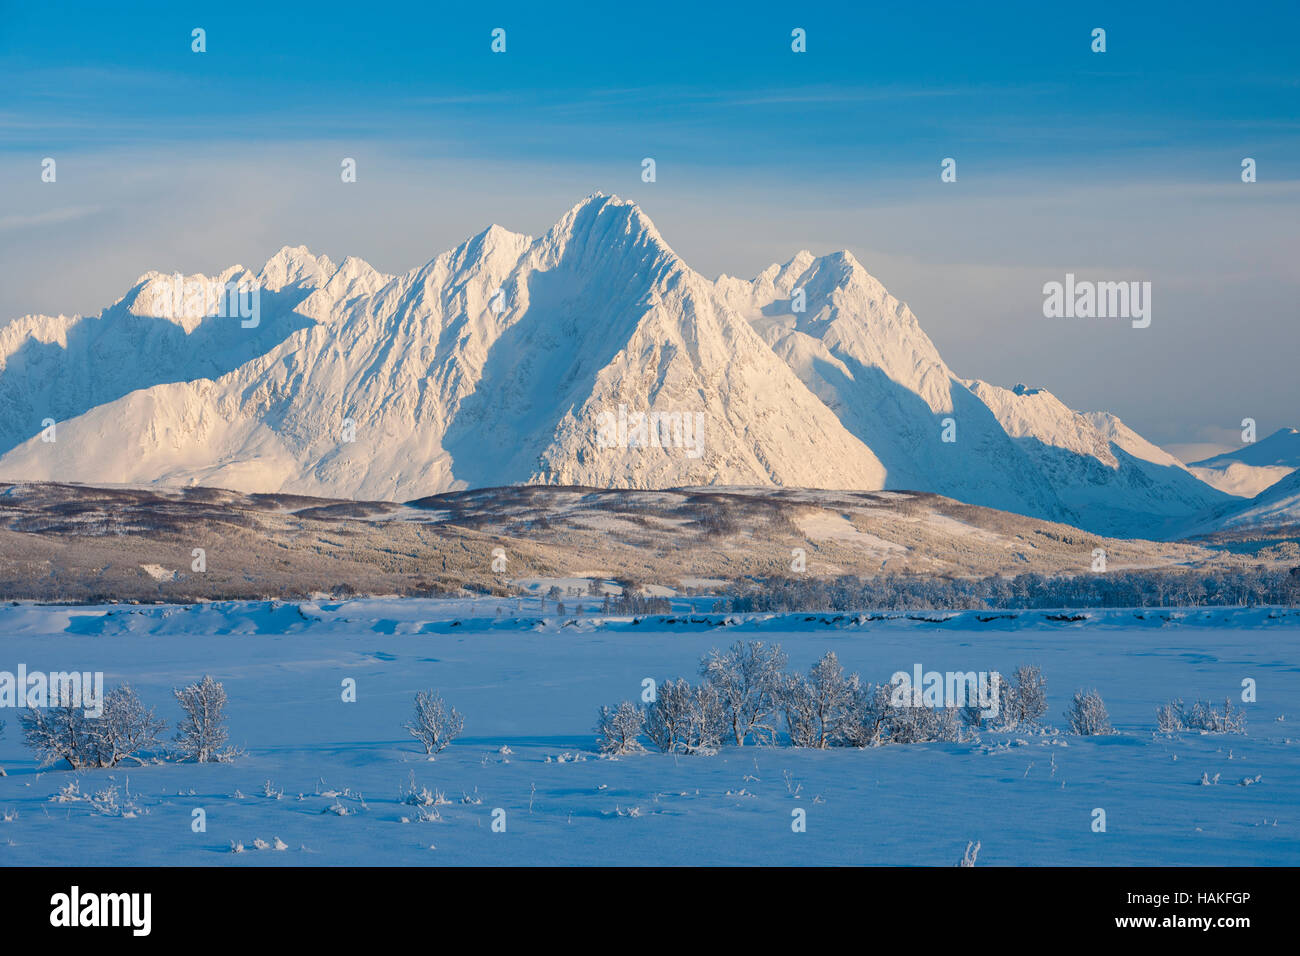 Snowy Winter Landscape with Lyngen Alps, Breivikeidet, Troms, Norway Stock Photo